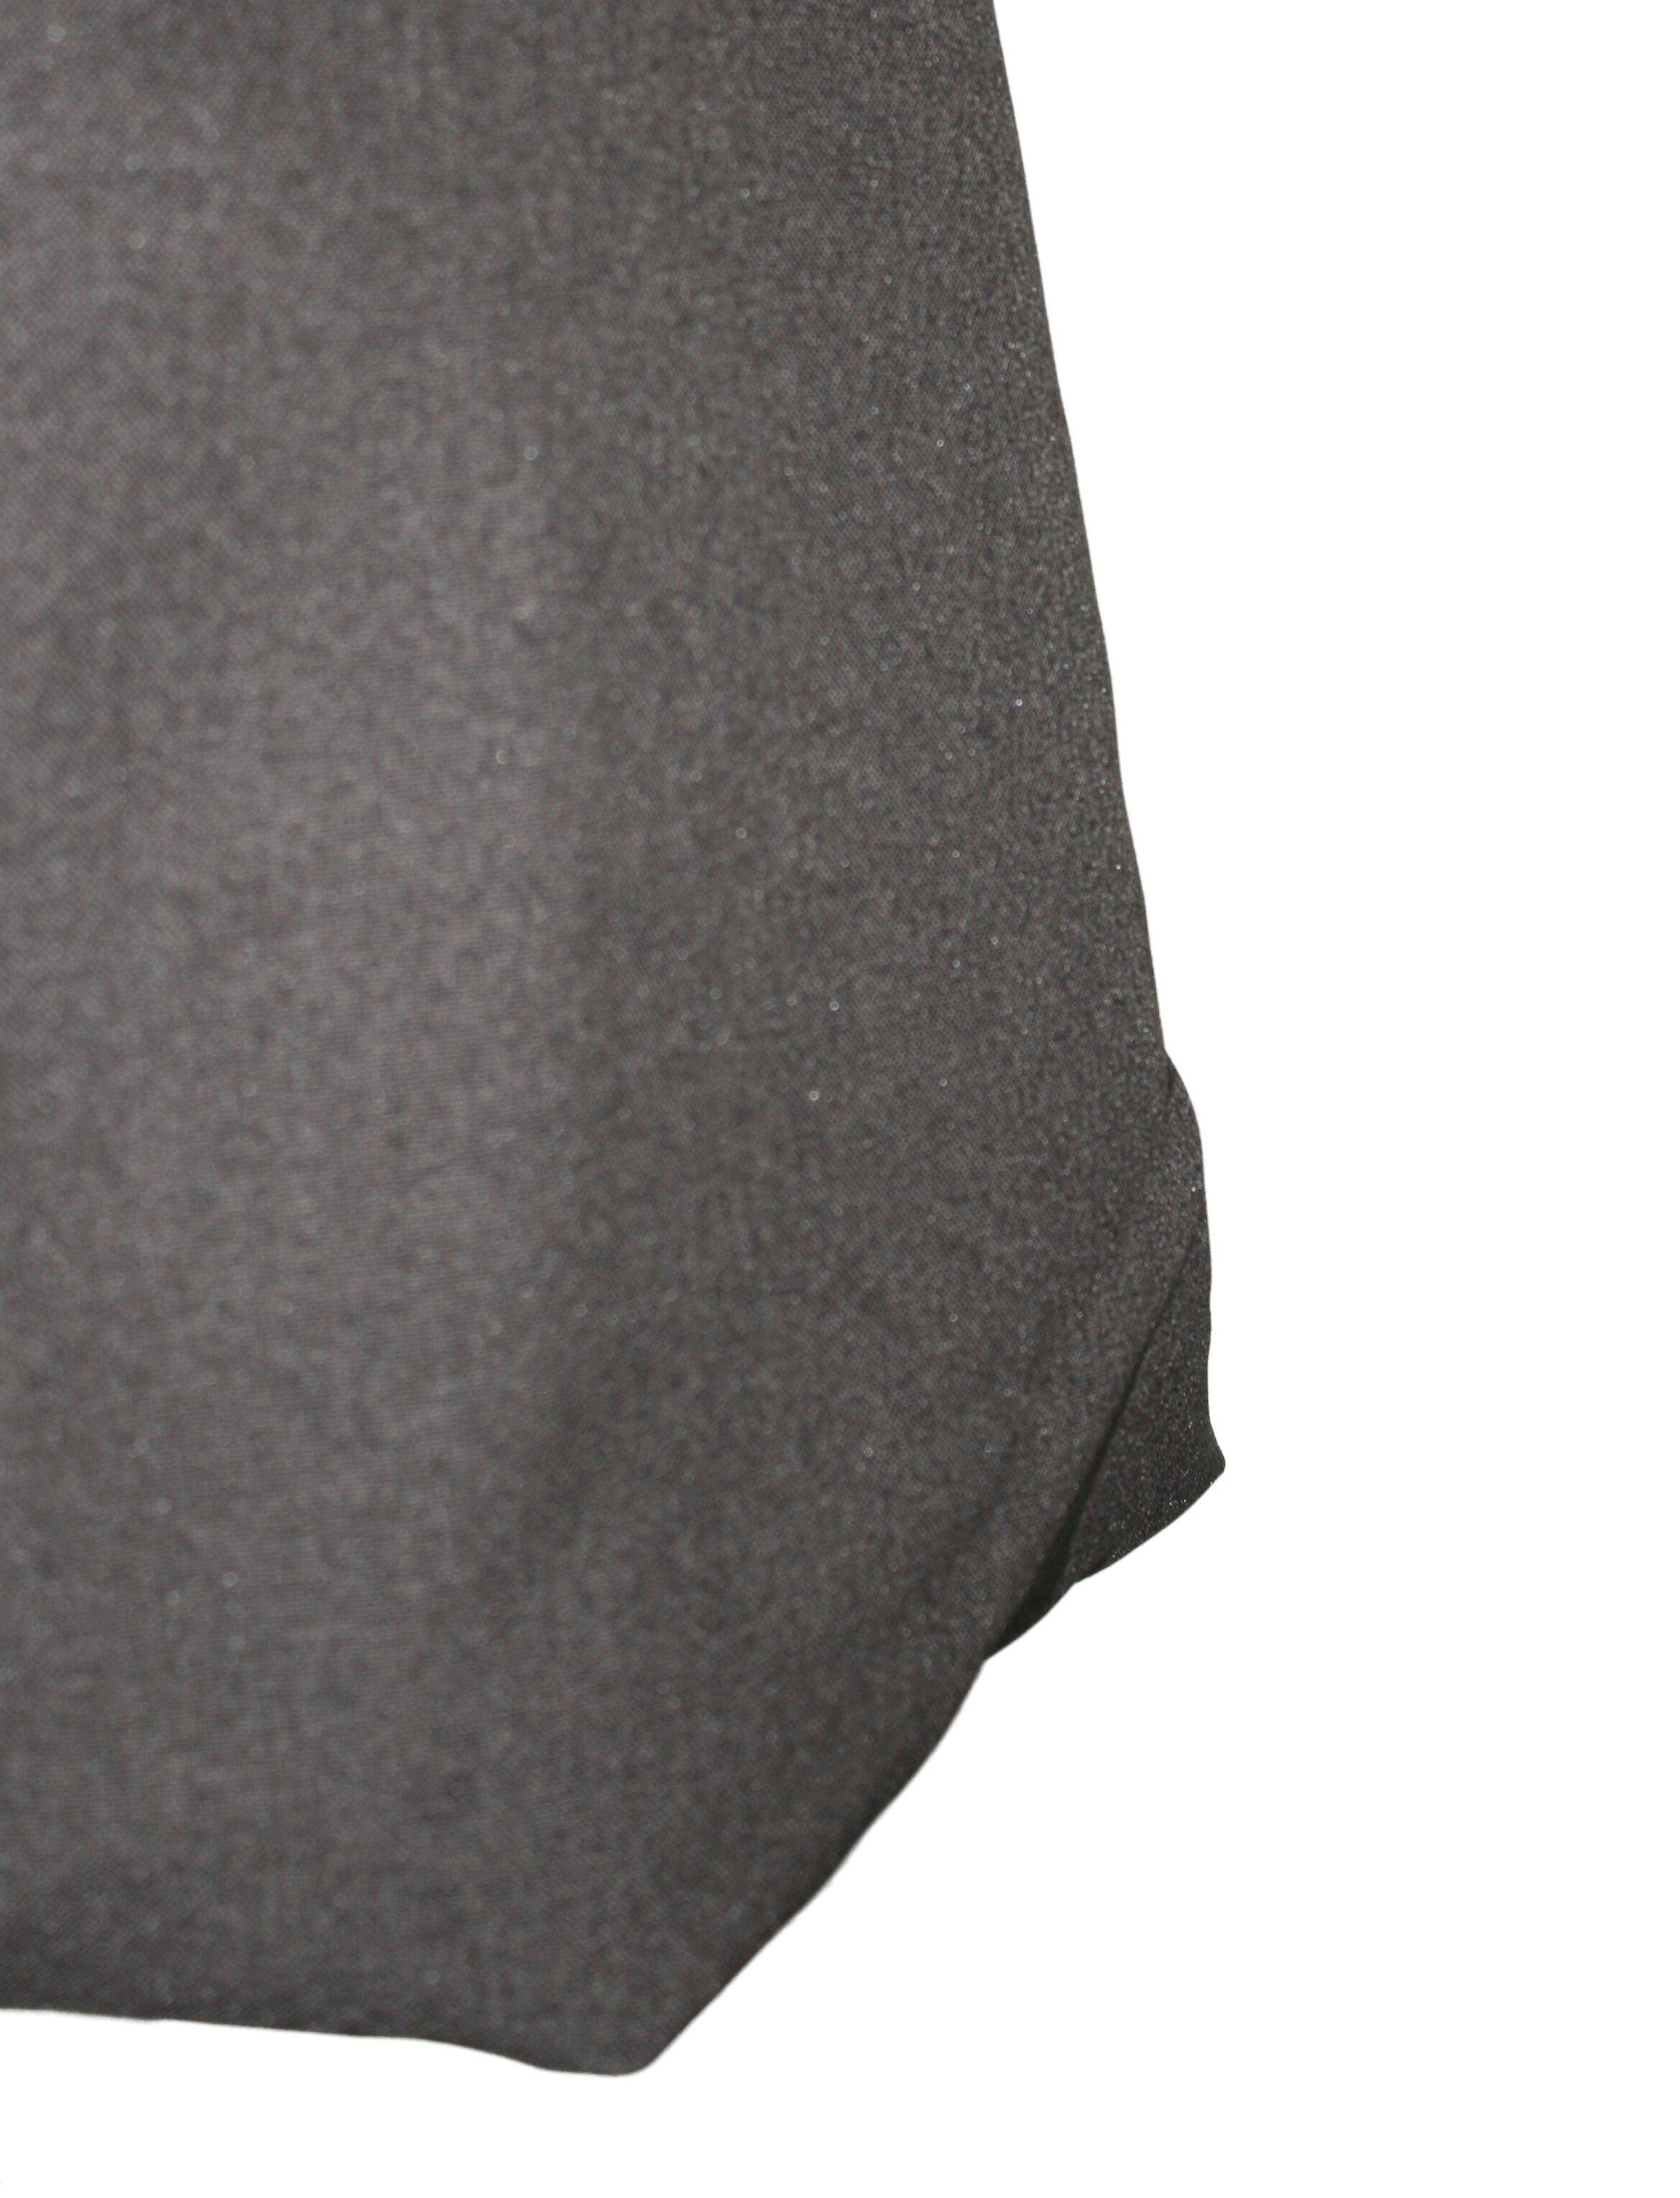 Braun Grau Schwarz Ballonrock elastischer Bund 65cm Grau dunkle Ecru meliert design